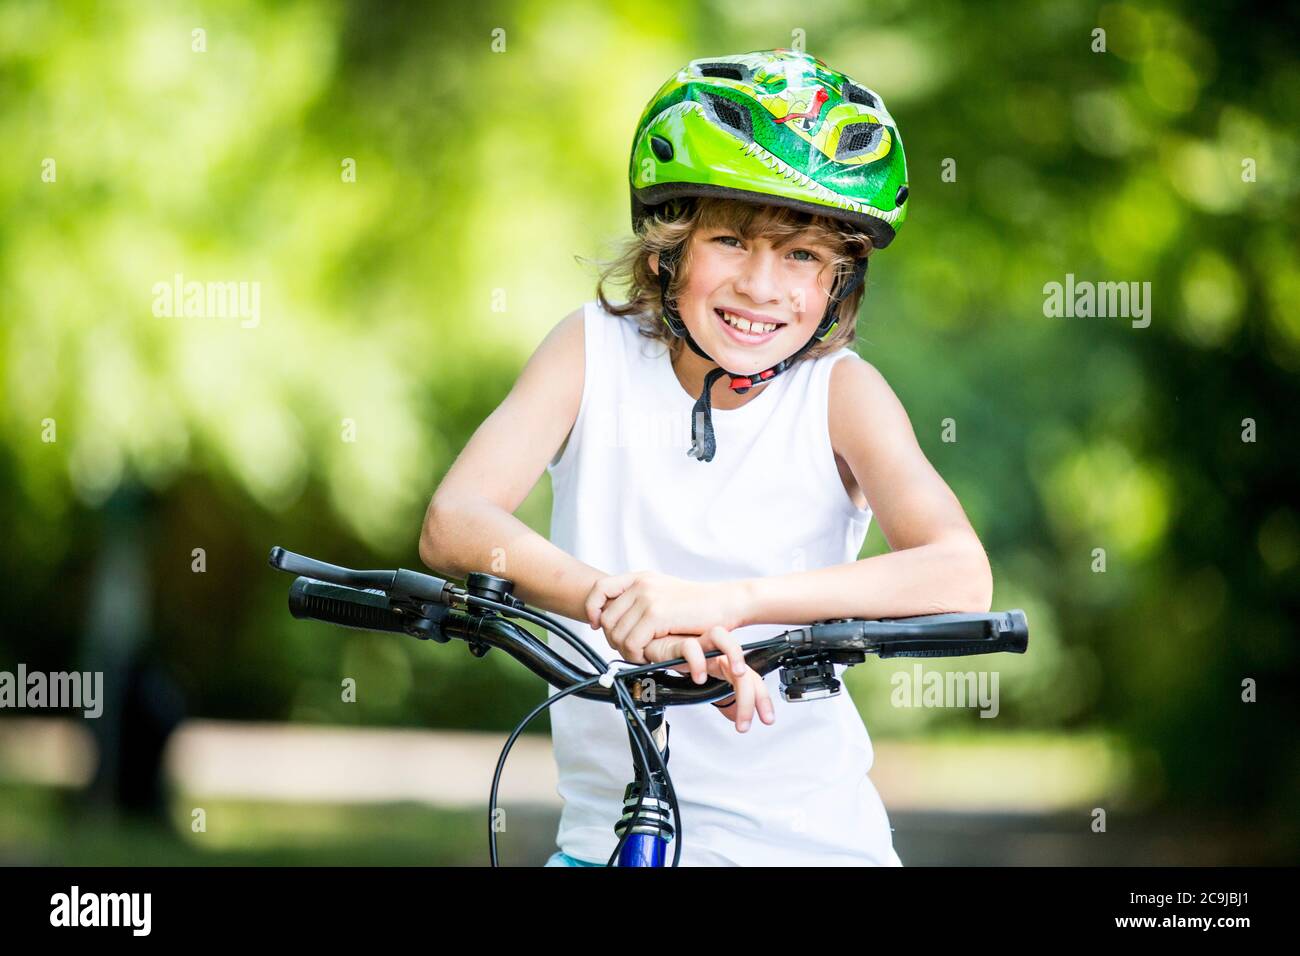 Ragazzo che indossa un casco da bicicletta e seduto in bicicletta nel parco, sorridente, ritratto. Foto Stock